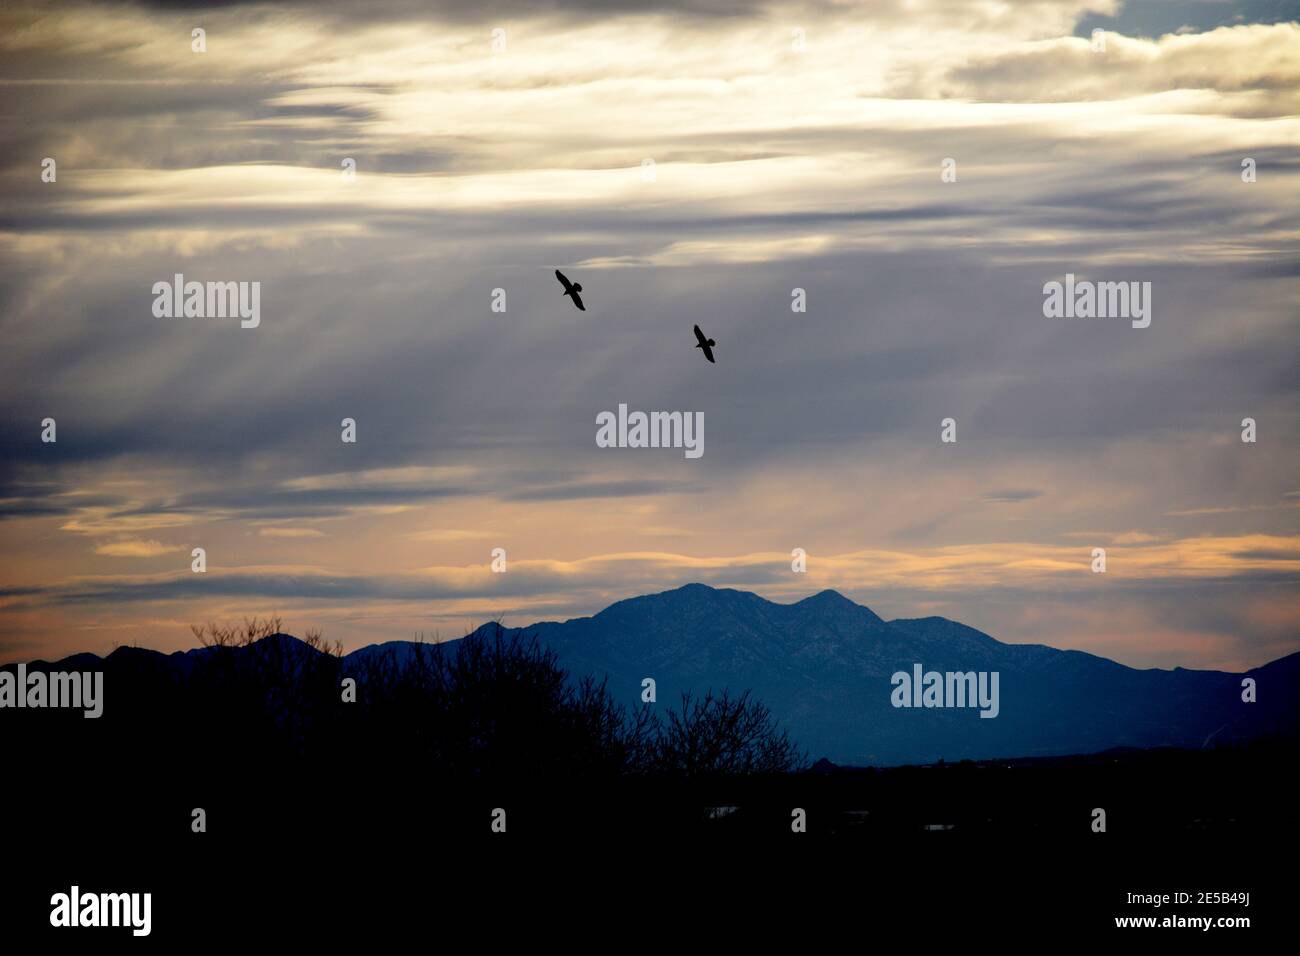 Une paire de corbeaux s'évolte en fin d'après-midi au-dessus du sud-ouest américain près de Santa Fe, Nouveau-Mexique. Banque D'Images